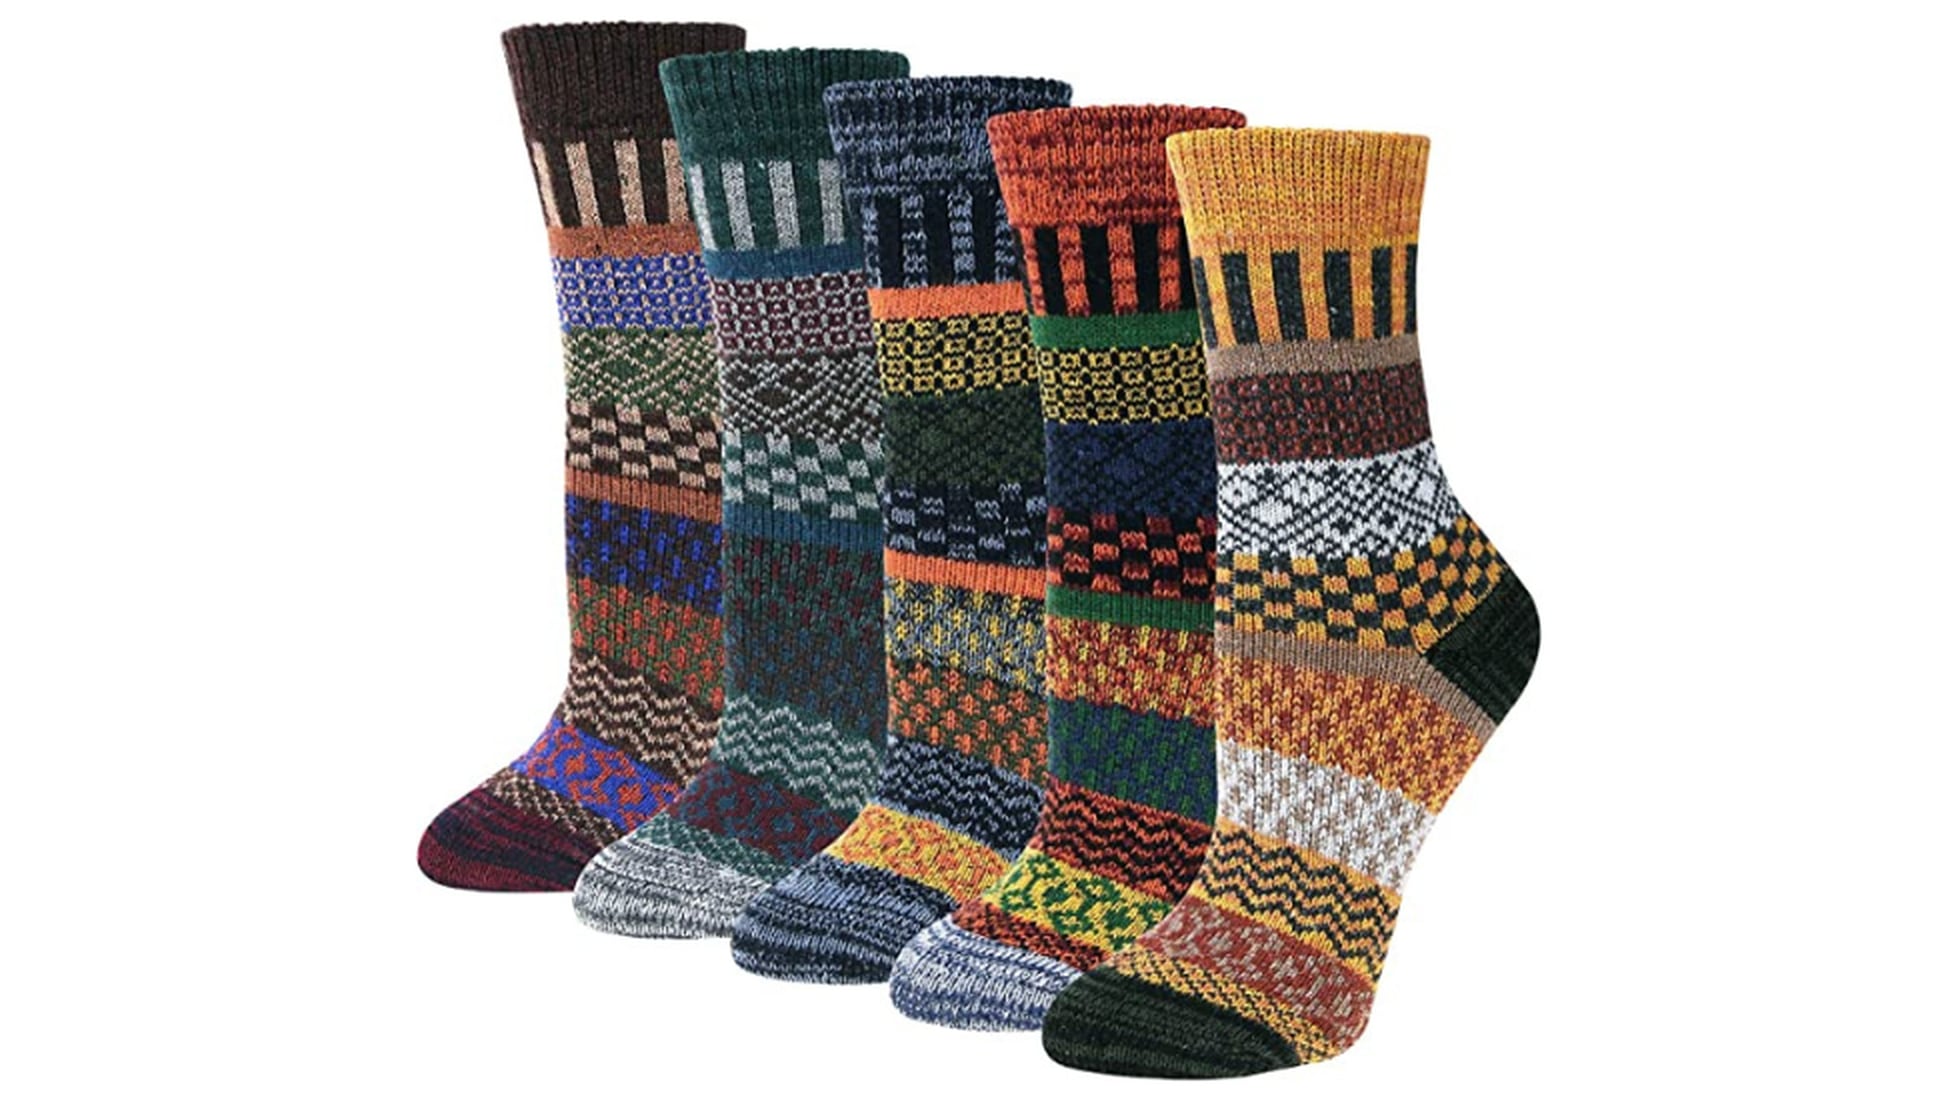 Los calcetines de lana para tener los pies calientes y abrigados este invierno | Escaparate: compras y ofertas | EL PAÍS